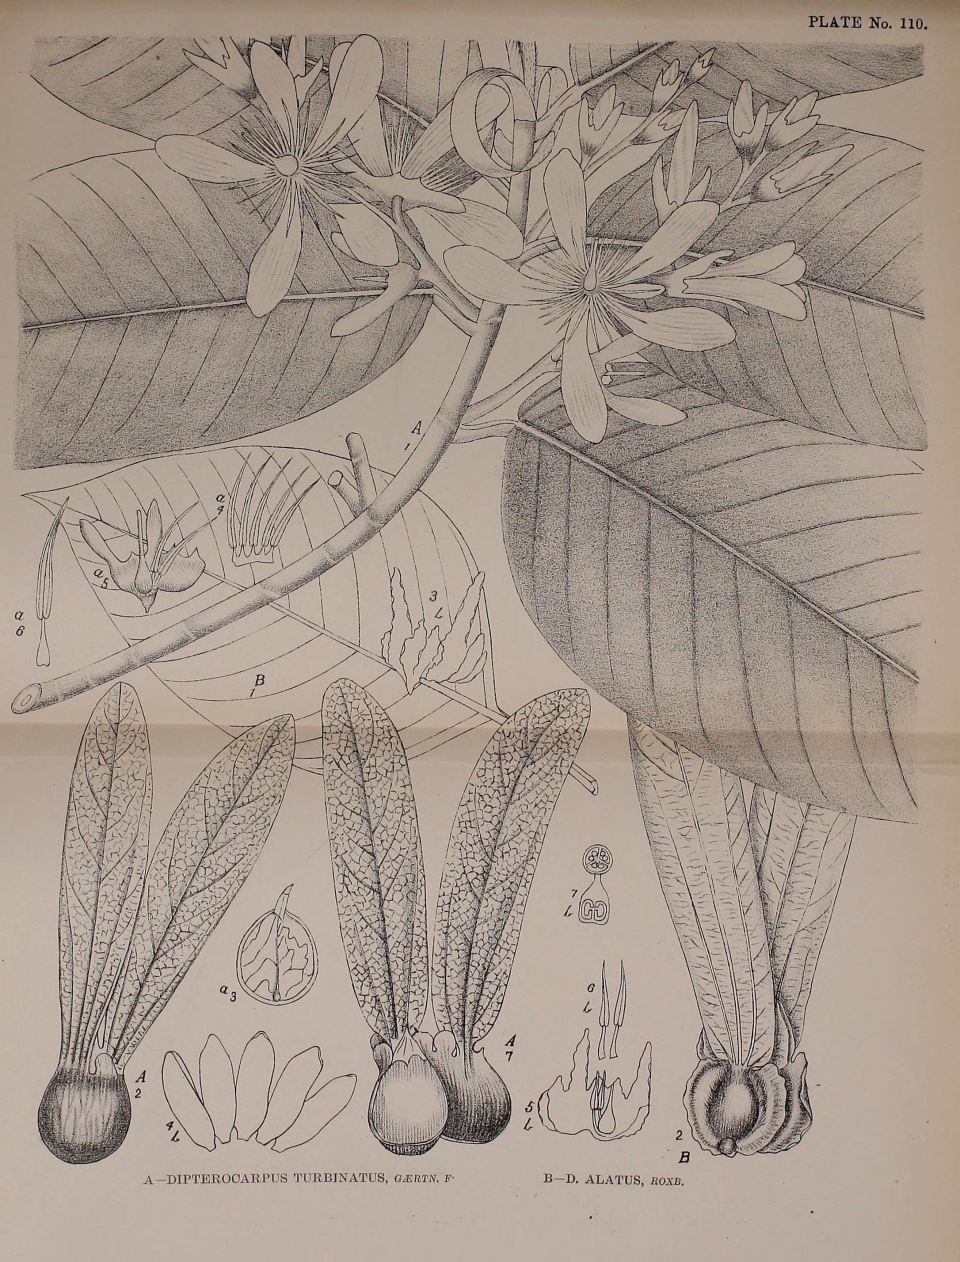 Dipterocarpus alatus